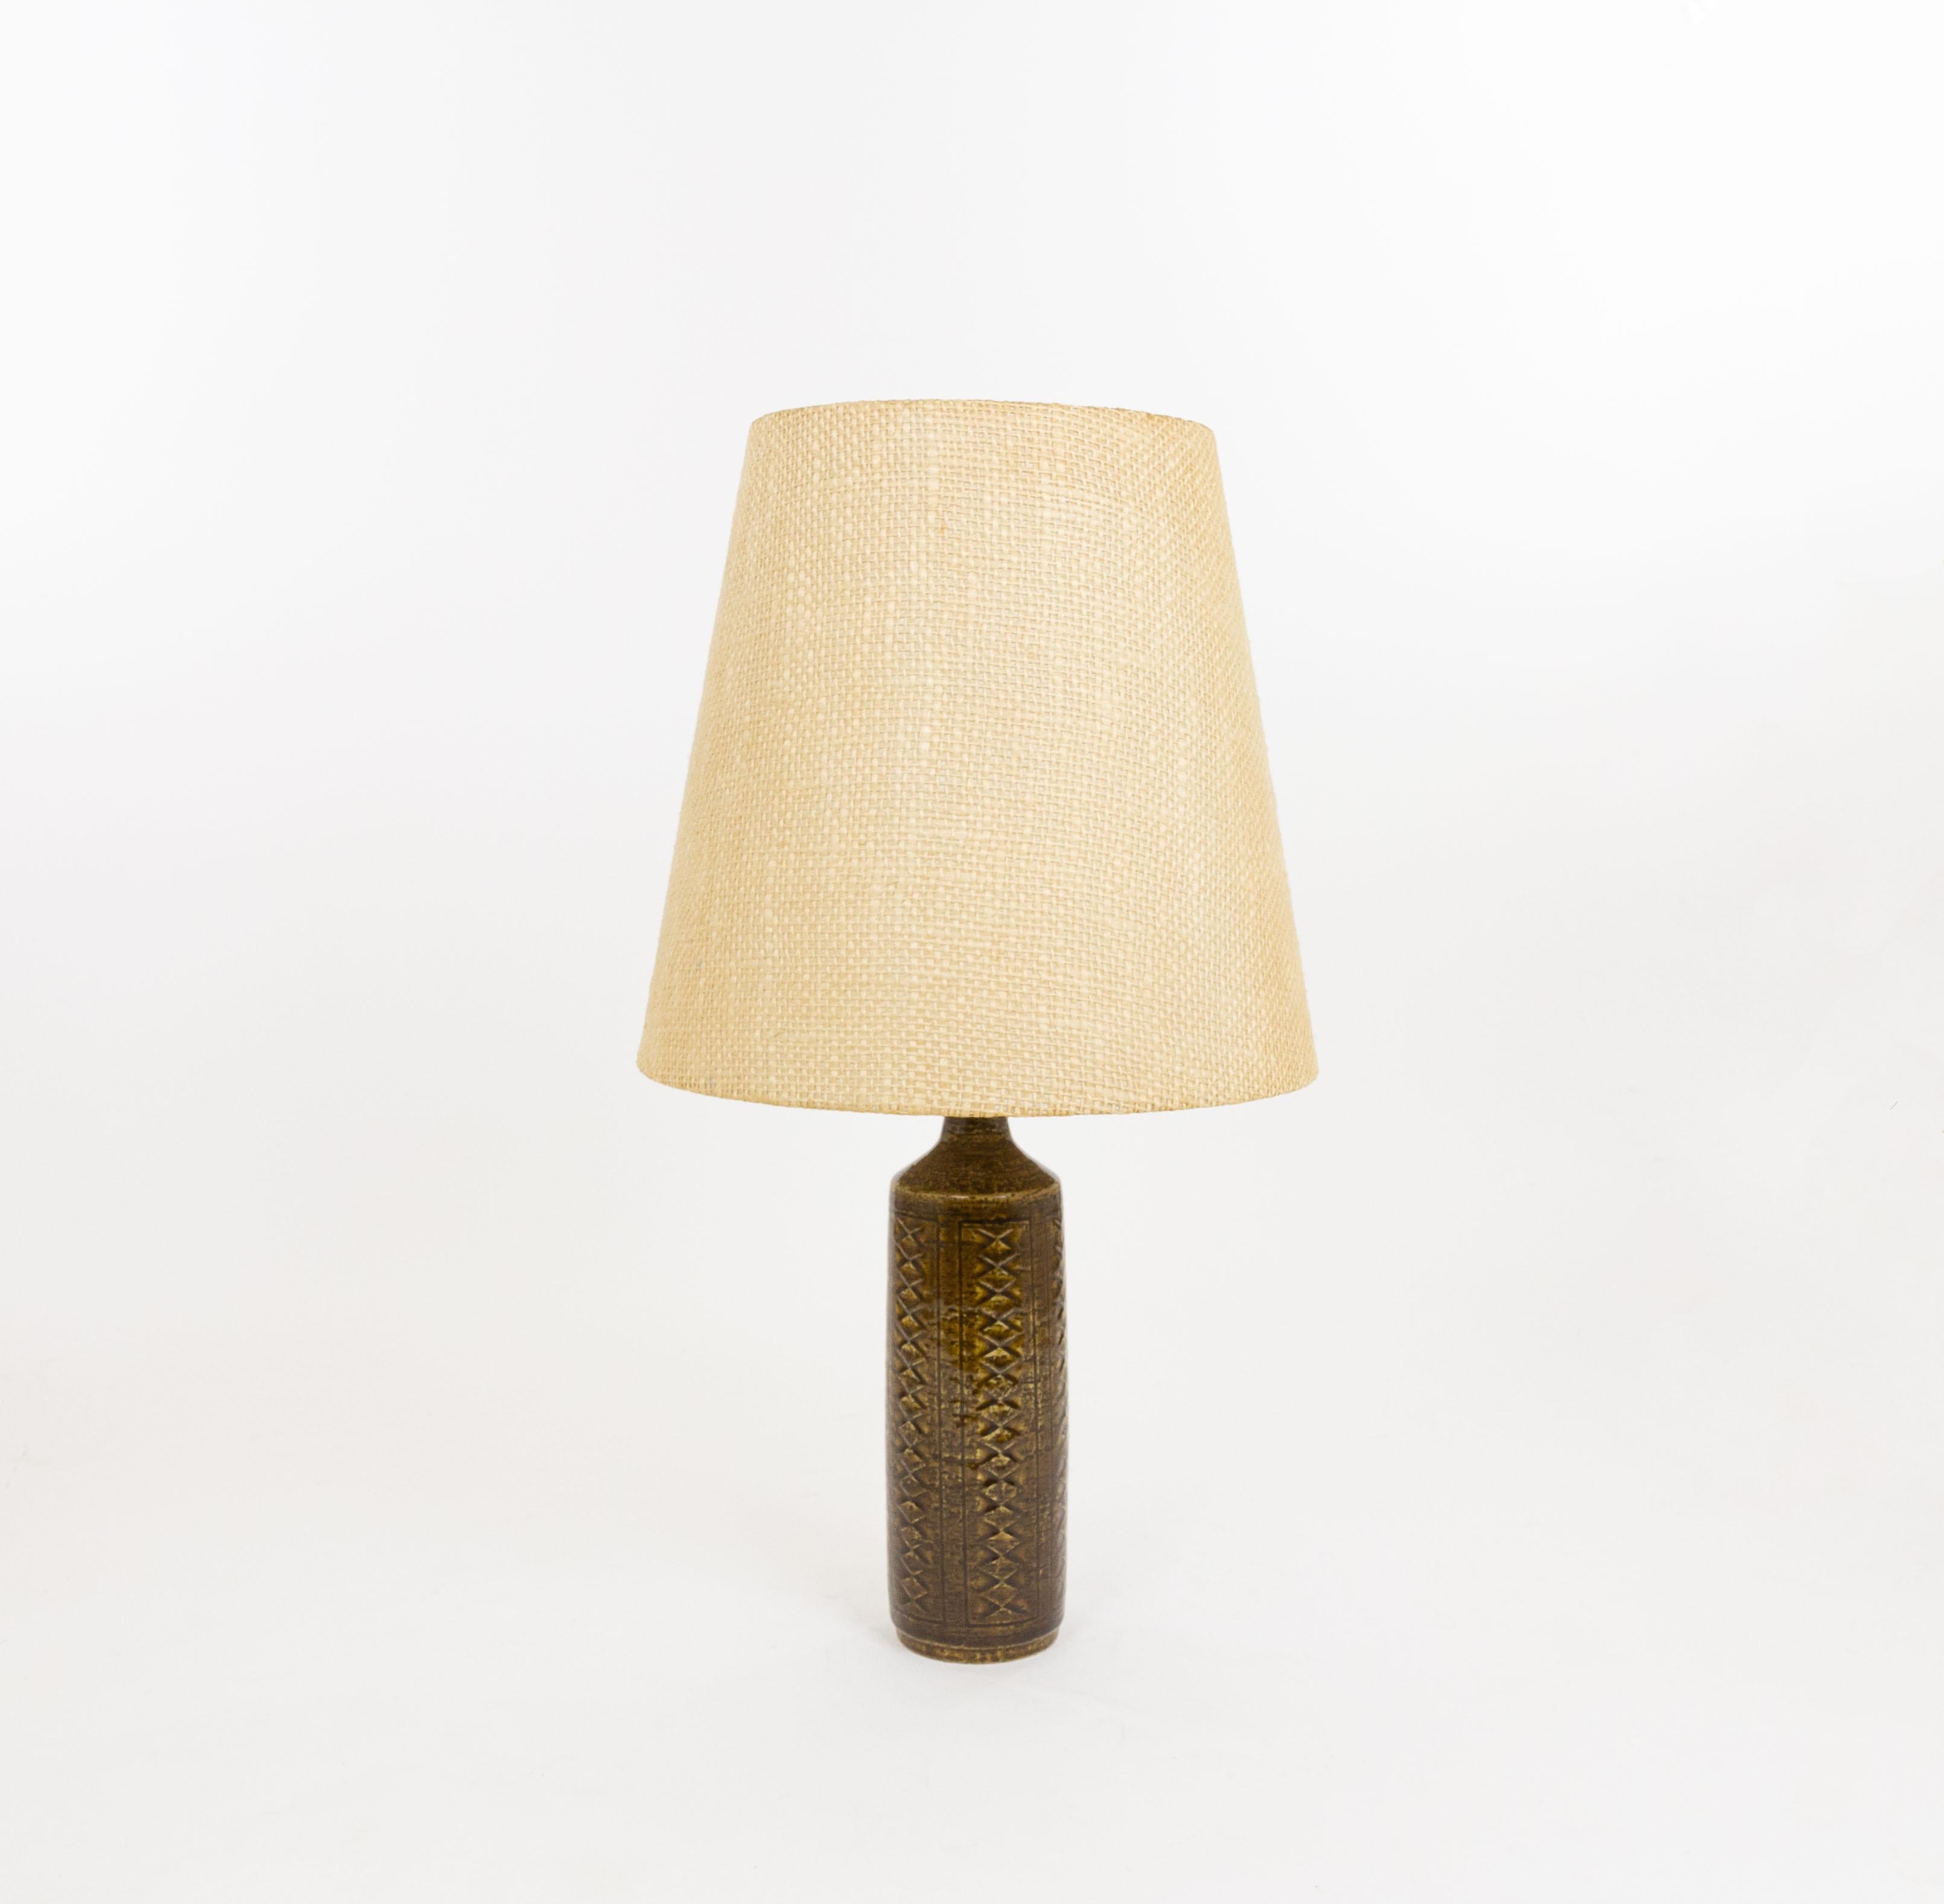 Lampe de table modèle DL/27 réalisée par Annelise et Per Linnemann-Schmidt pour Palshus dans les années 1960. La couleur de la base décorée à la main est Chestnut Brown. Il présente des motifs impressionnés.

La lampe est livrée avec son support